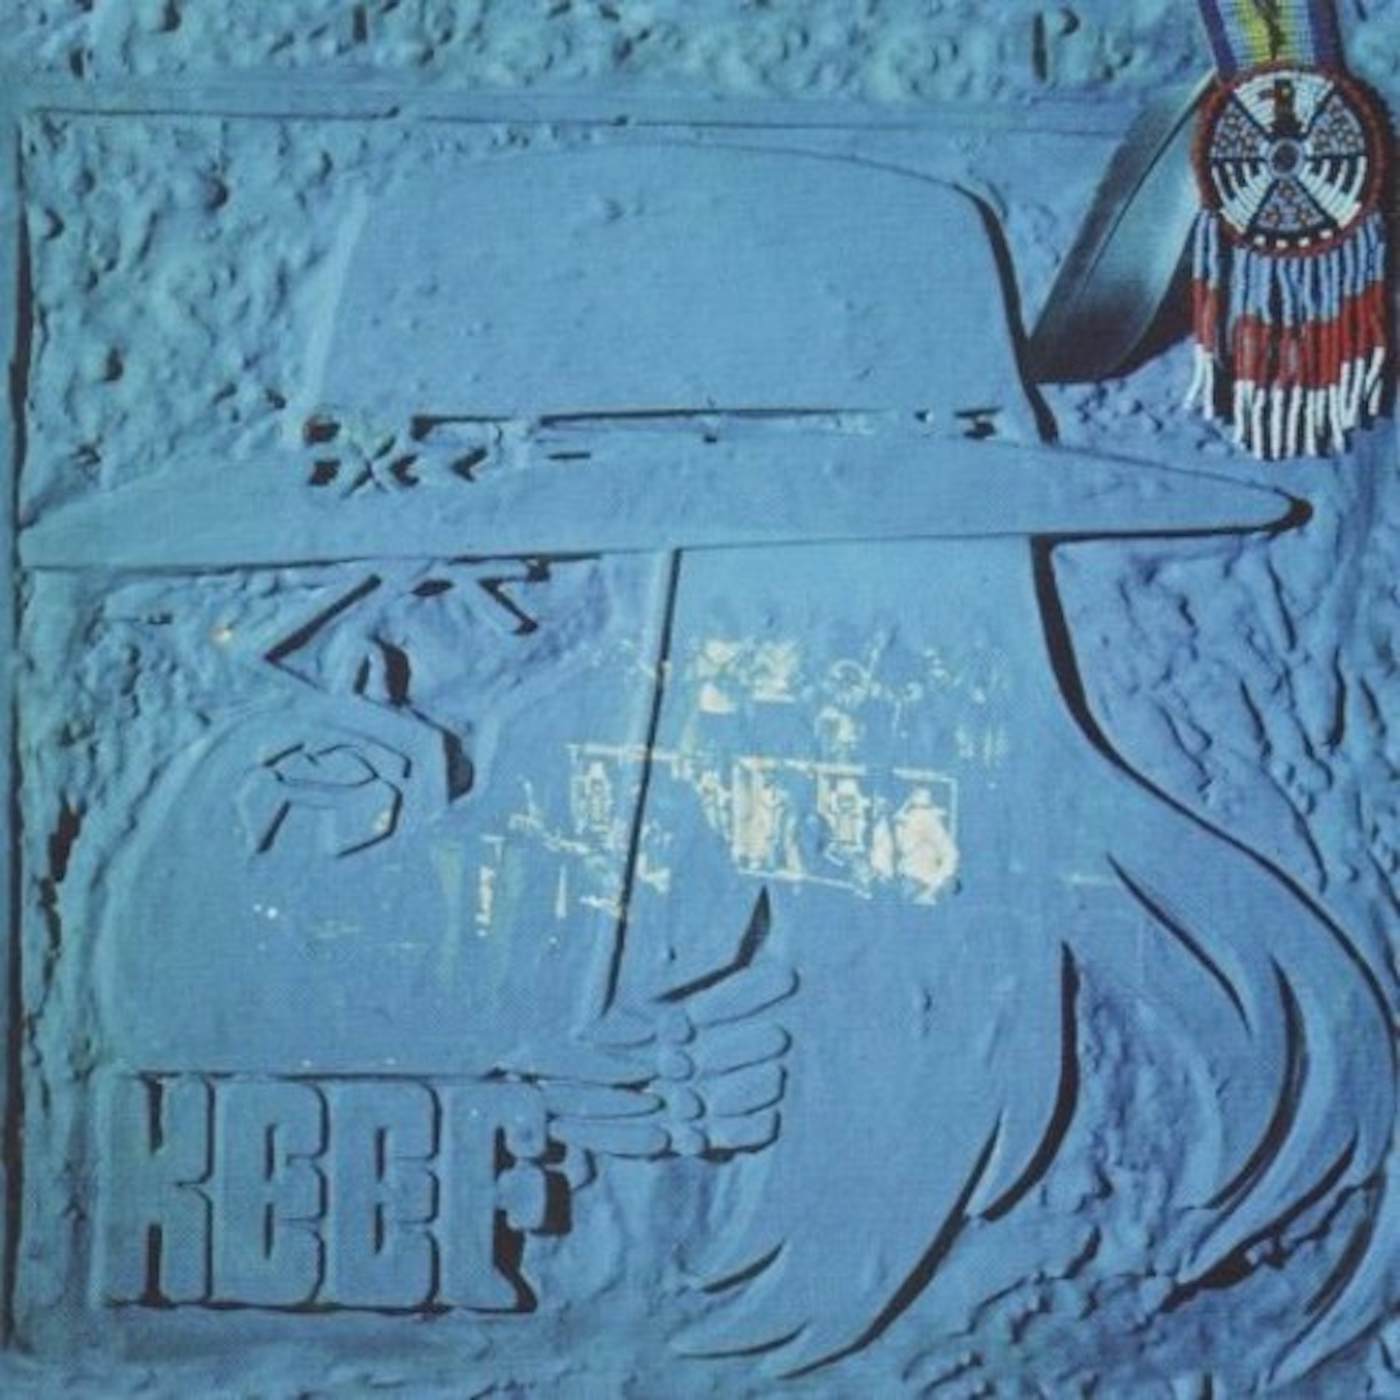 Keef Hartley LITTLE BIG BAND CD